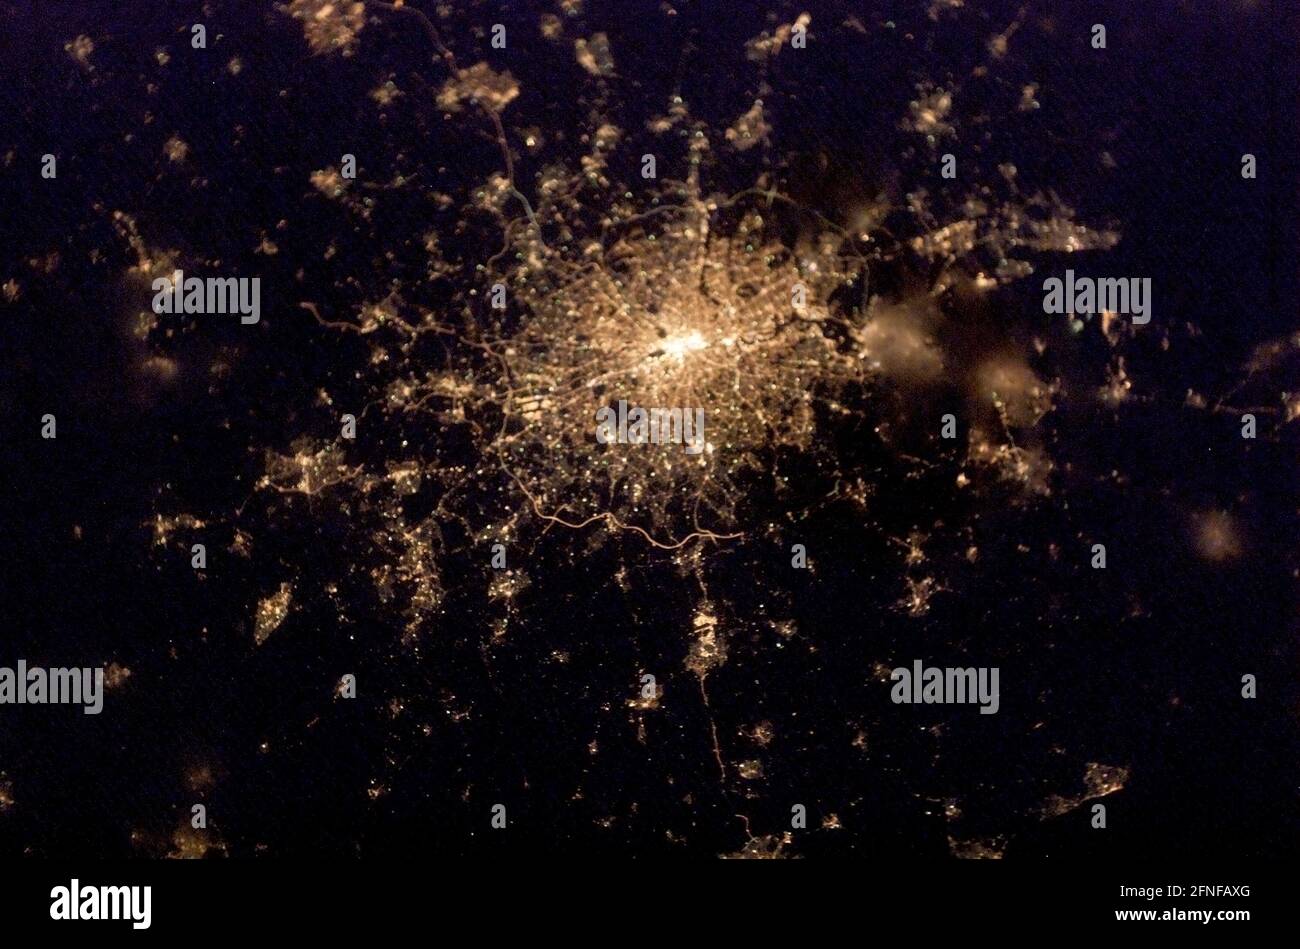 LONDRA, Regno Unito - 04 febbraio 2003 - le luci della città di Londra, Inghilterra, sono state catturate con una fotocamera digitale da uno dei 6 crewmembers di Expedition Foto Stock